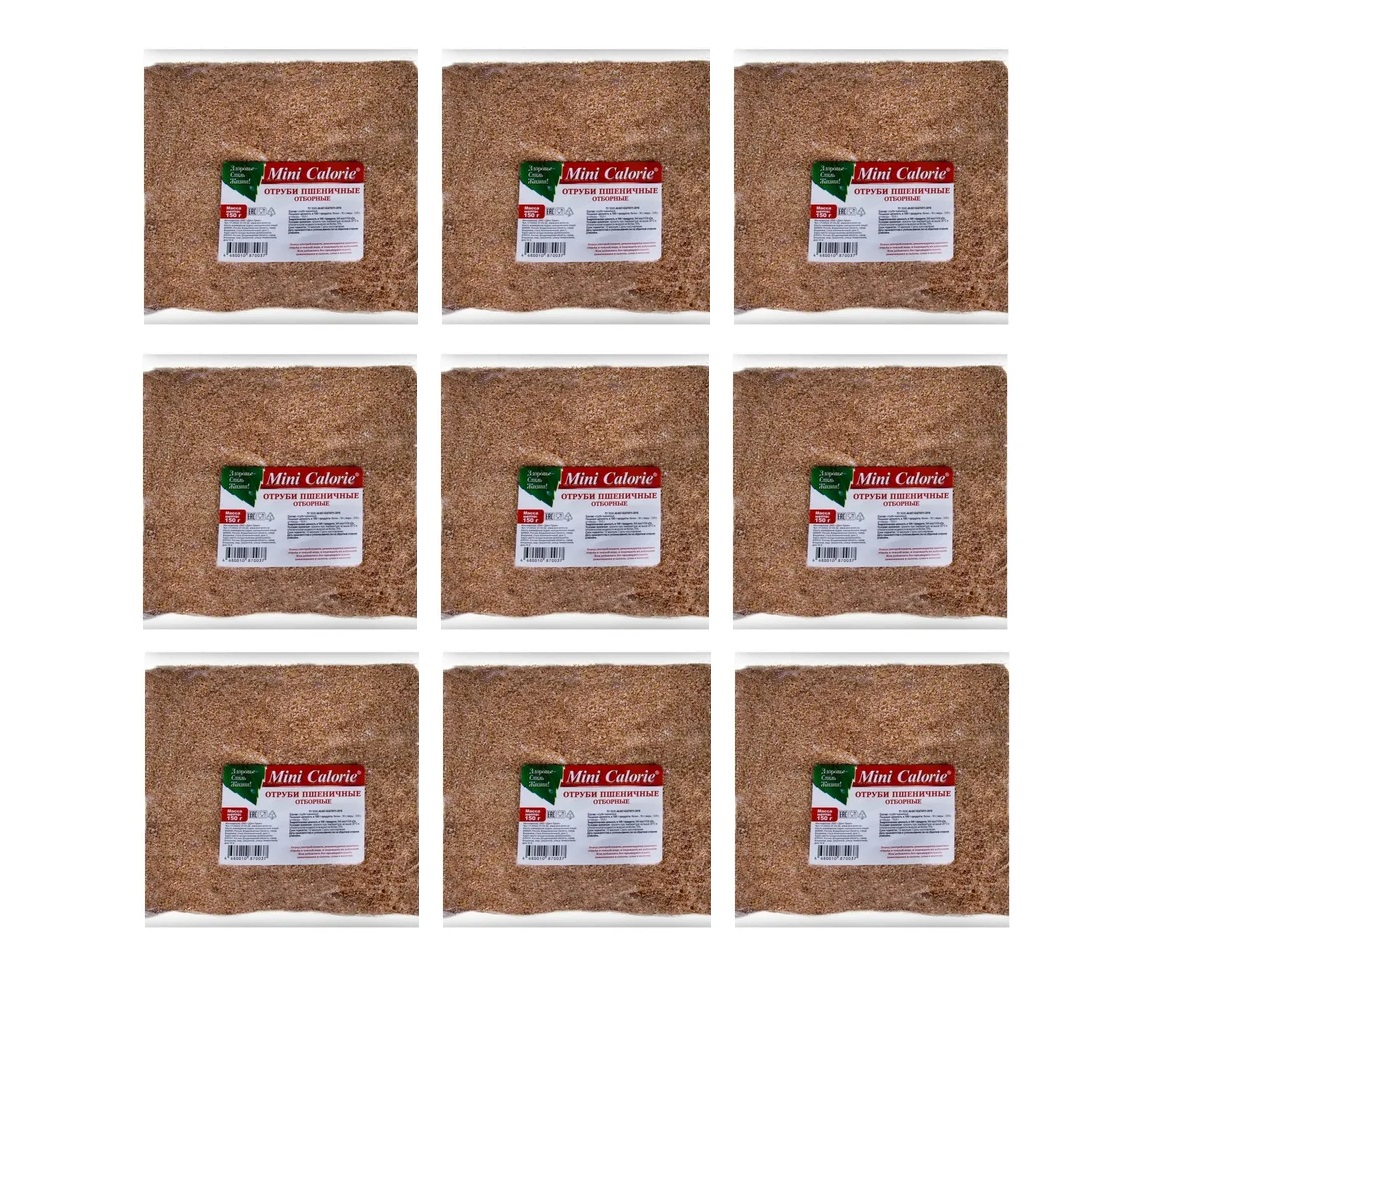 Отруби Mini Calorie пшеничные, отборные, 9 шт по 150 г